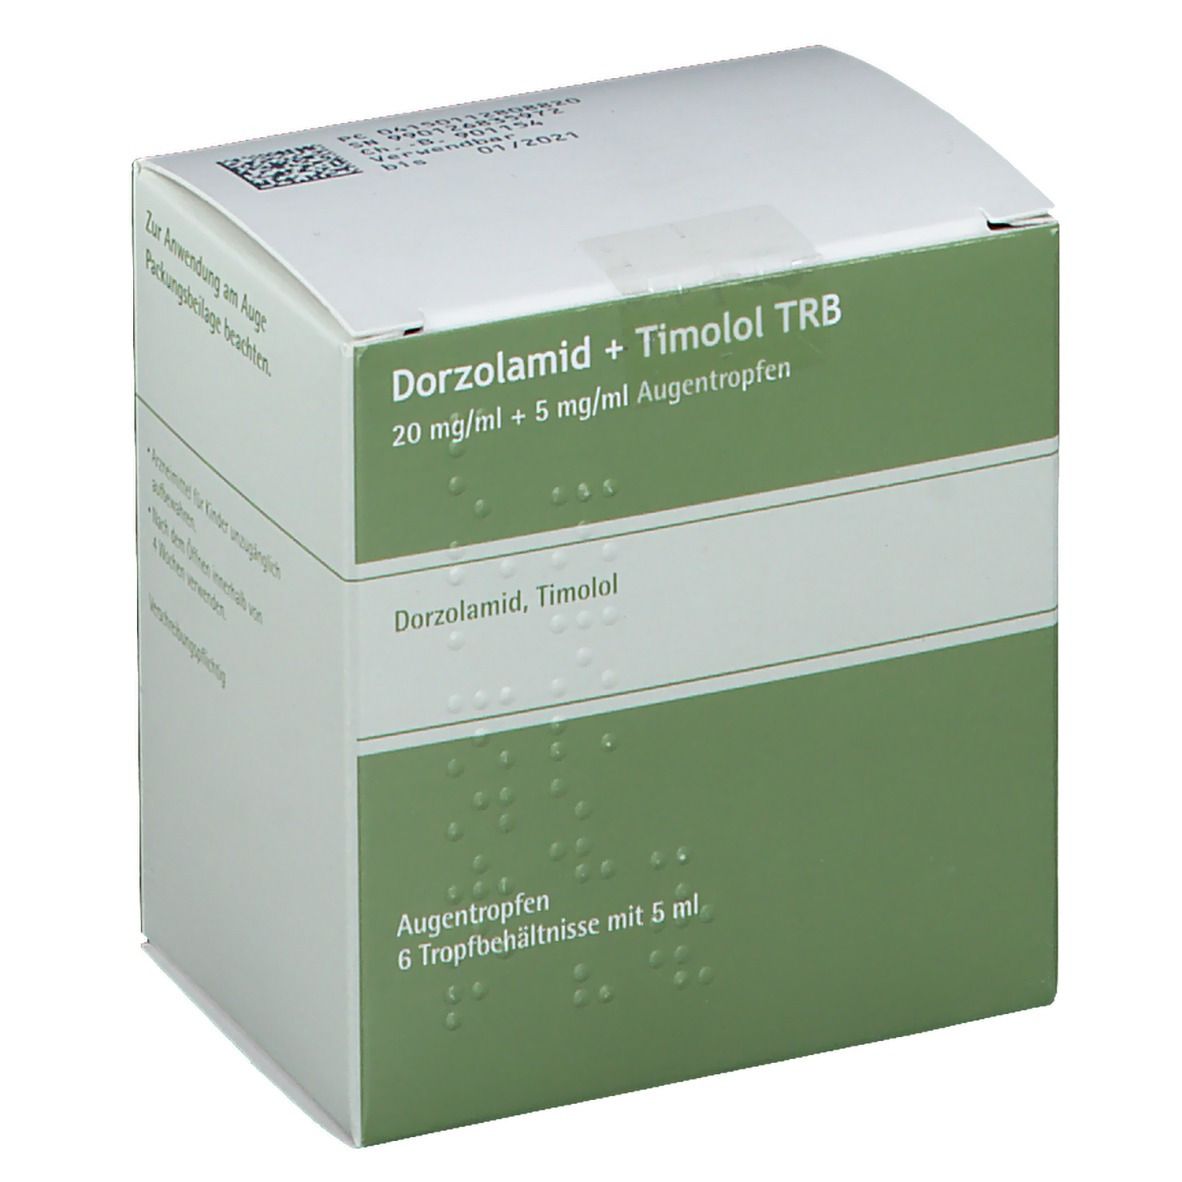 Dorzolamid + Timolol TRB 20 mg/ml + 5 mg/ml